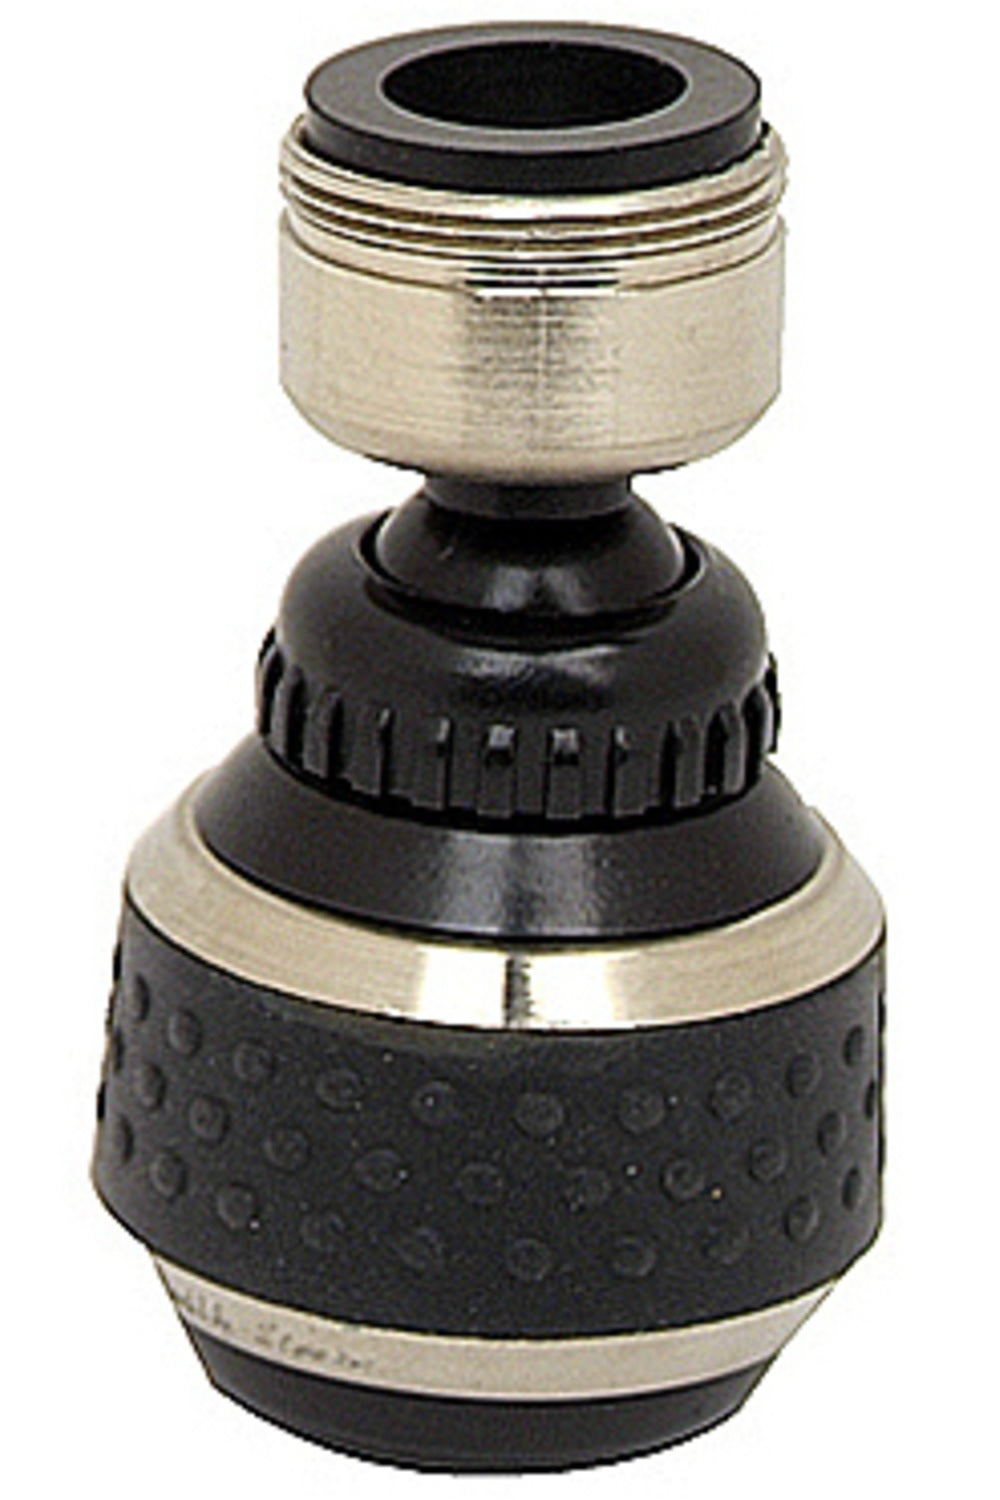 BrassCraft SF0331 Spray Faucet Aerator, Black/Brushed Nickel